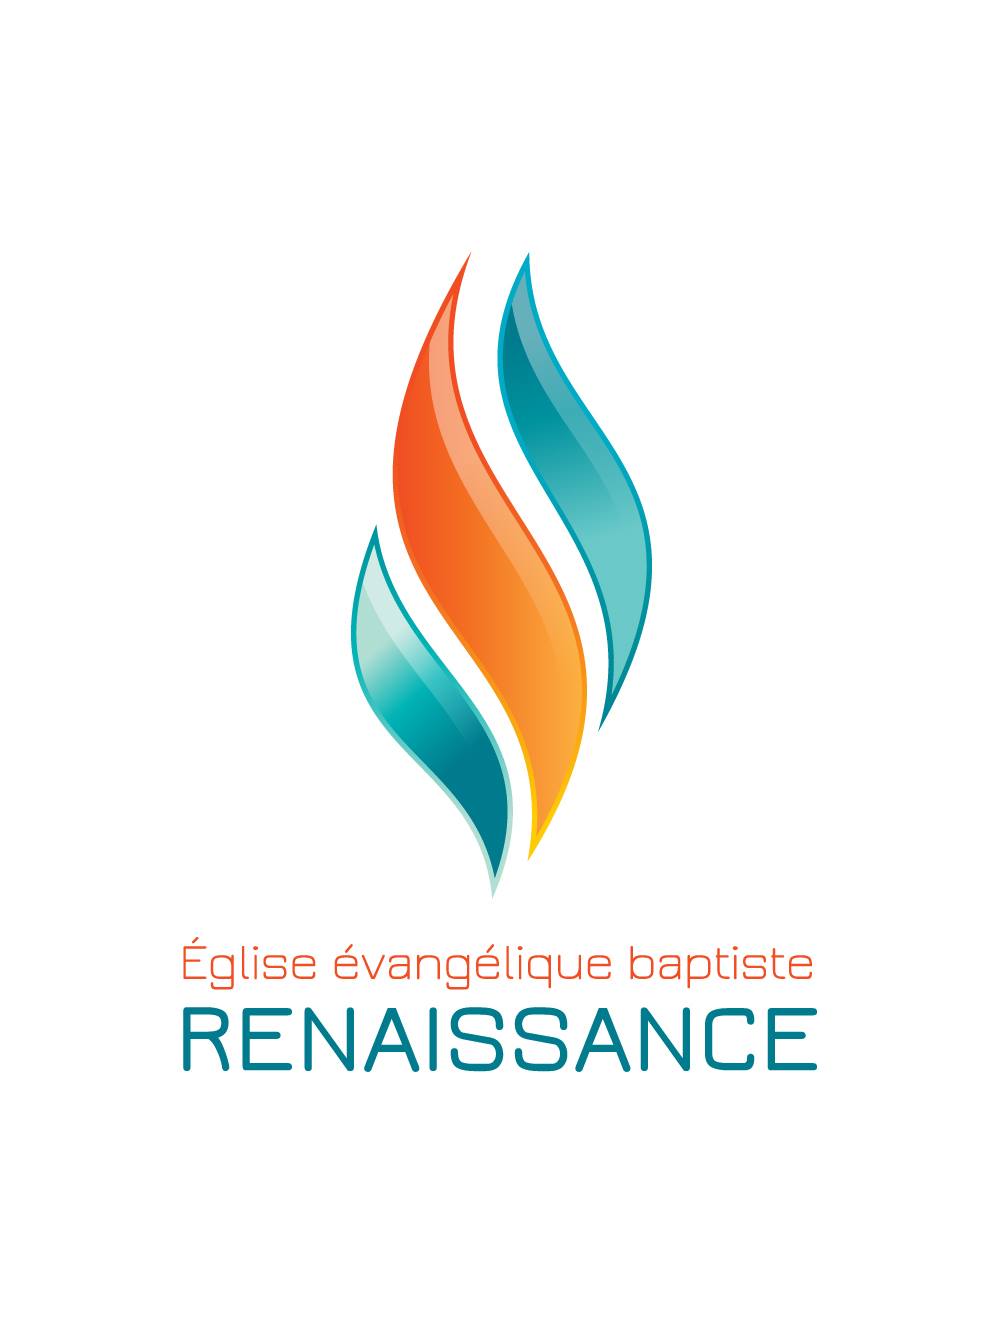 Eglise évangélique baptiste Renaissance logo